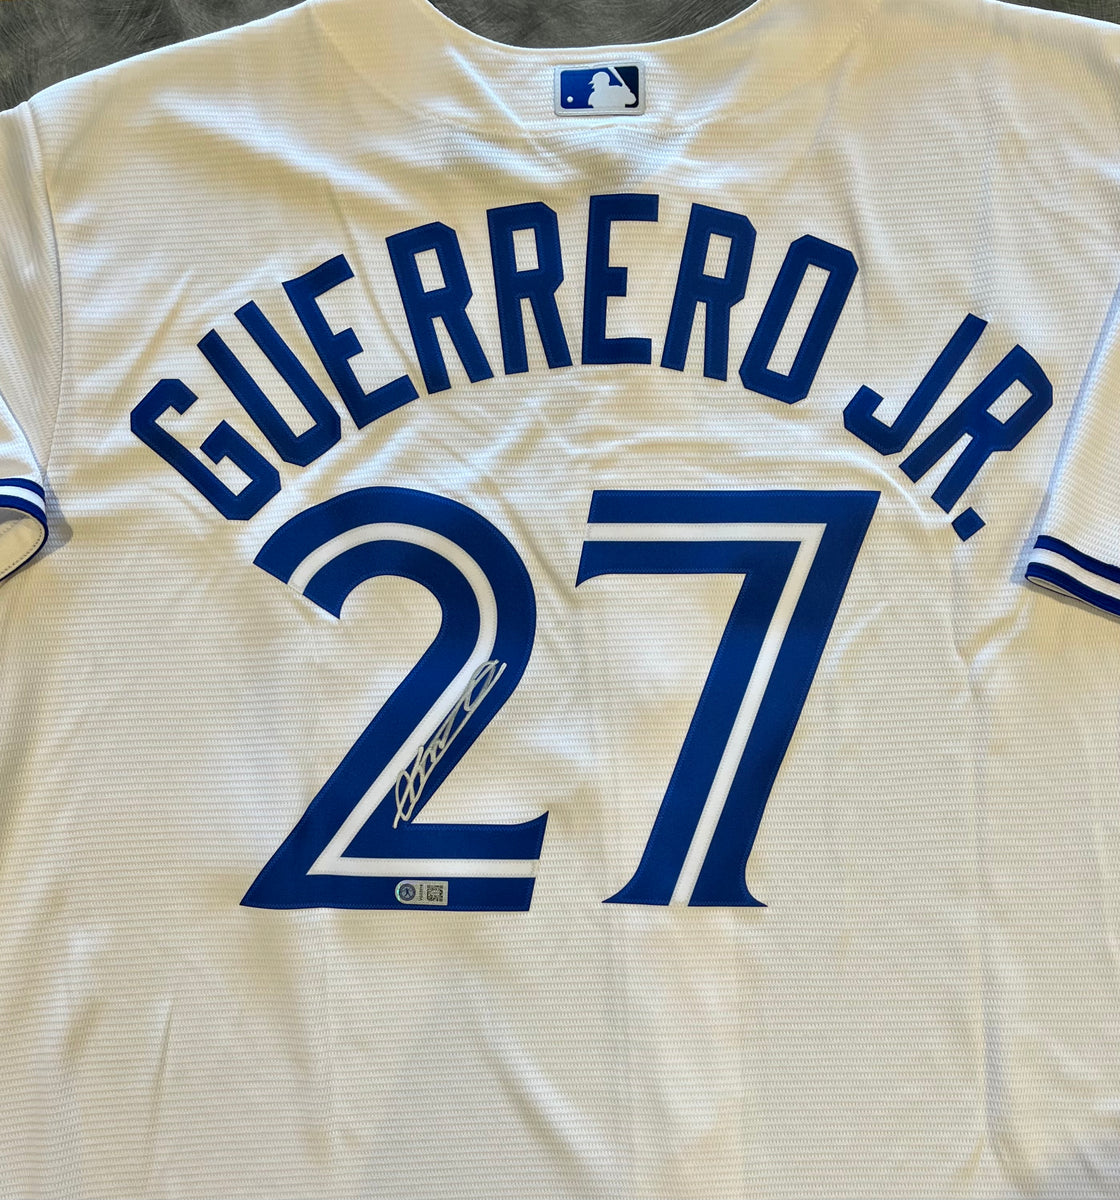 Guerrero Jr., Vladimir - Signed Jersey Blue Jays Replica Blue